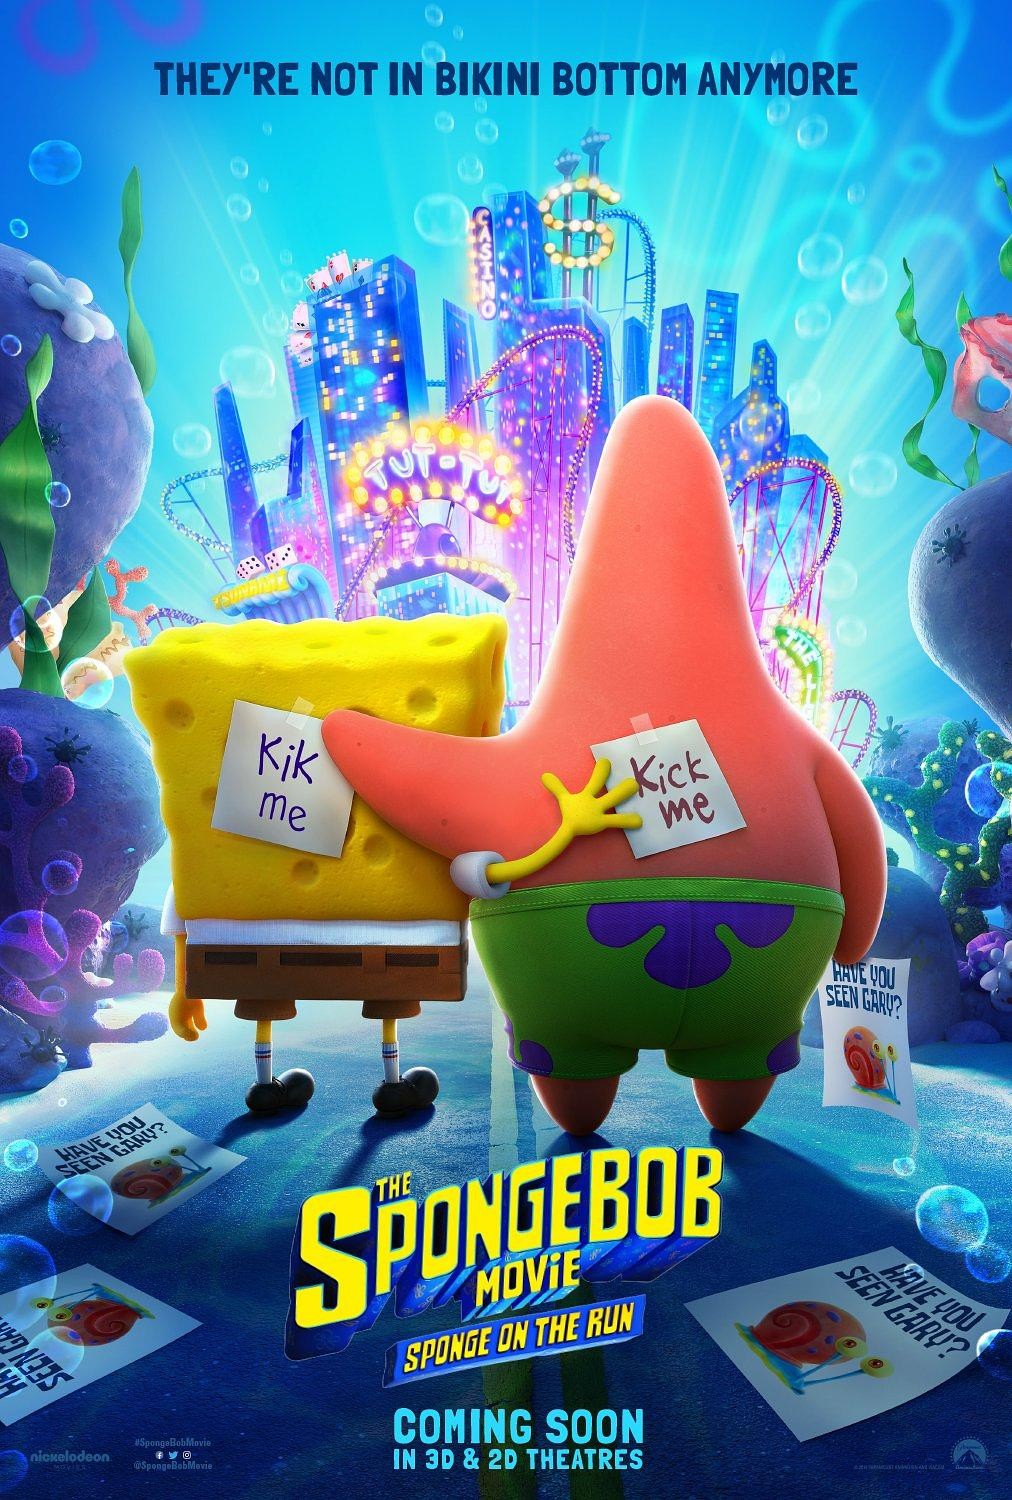 [海绵宝宝3/海绵宝宝：奔跑吧(台)/海绵宝宝：急急脚走佬(港)/SpongeBob Squarepants 3/Spongebob Movie 3/It's a Wonderful Sponge/The SpongeBob Movie: Sponge on the Run][2020][美国][喜剧][英语]